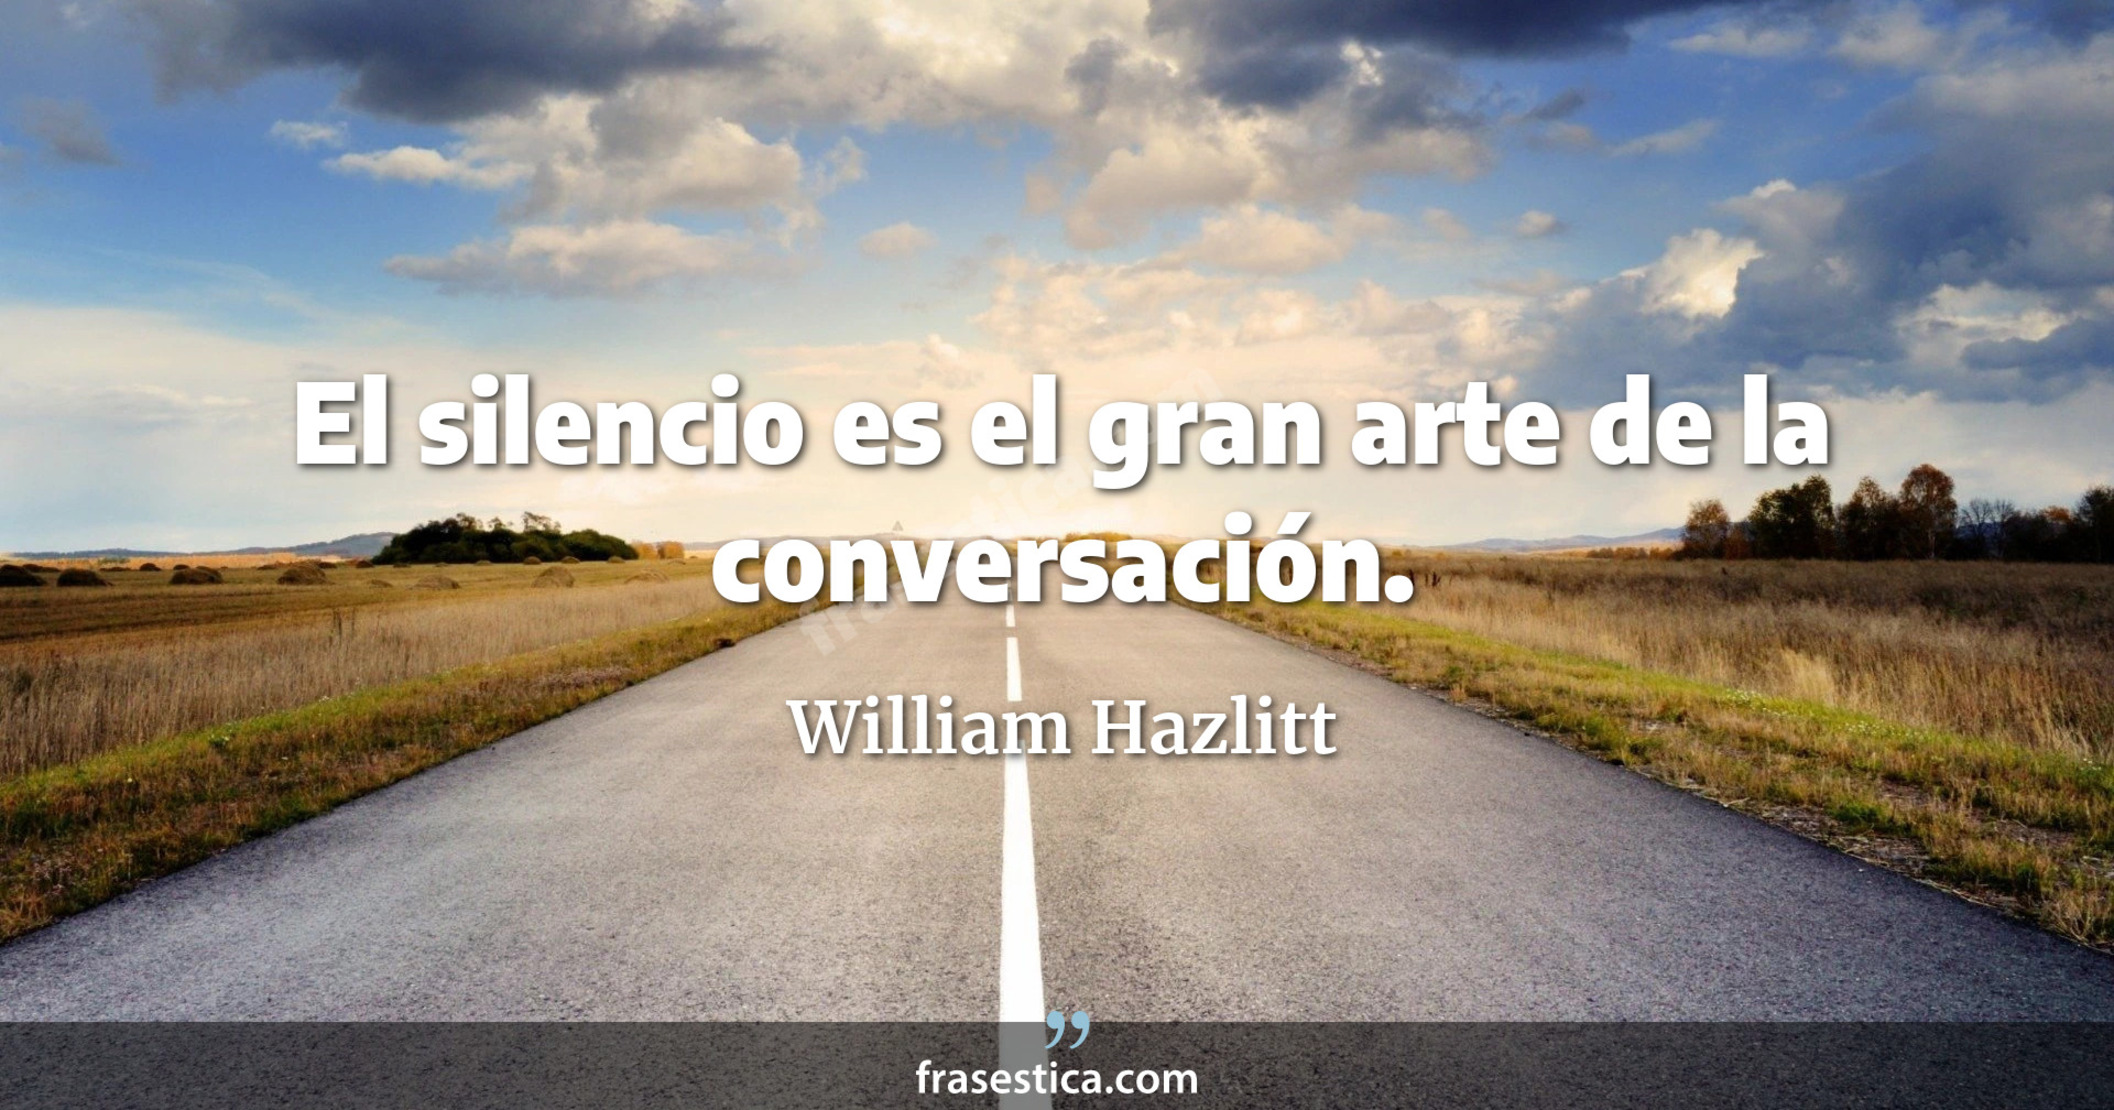 El silencio es el gran arte de la conversación. - William Hazlitt